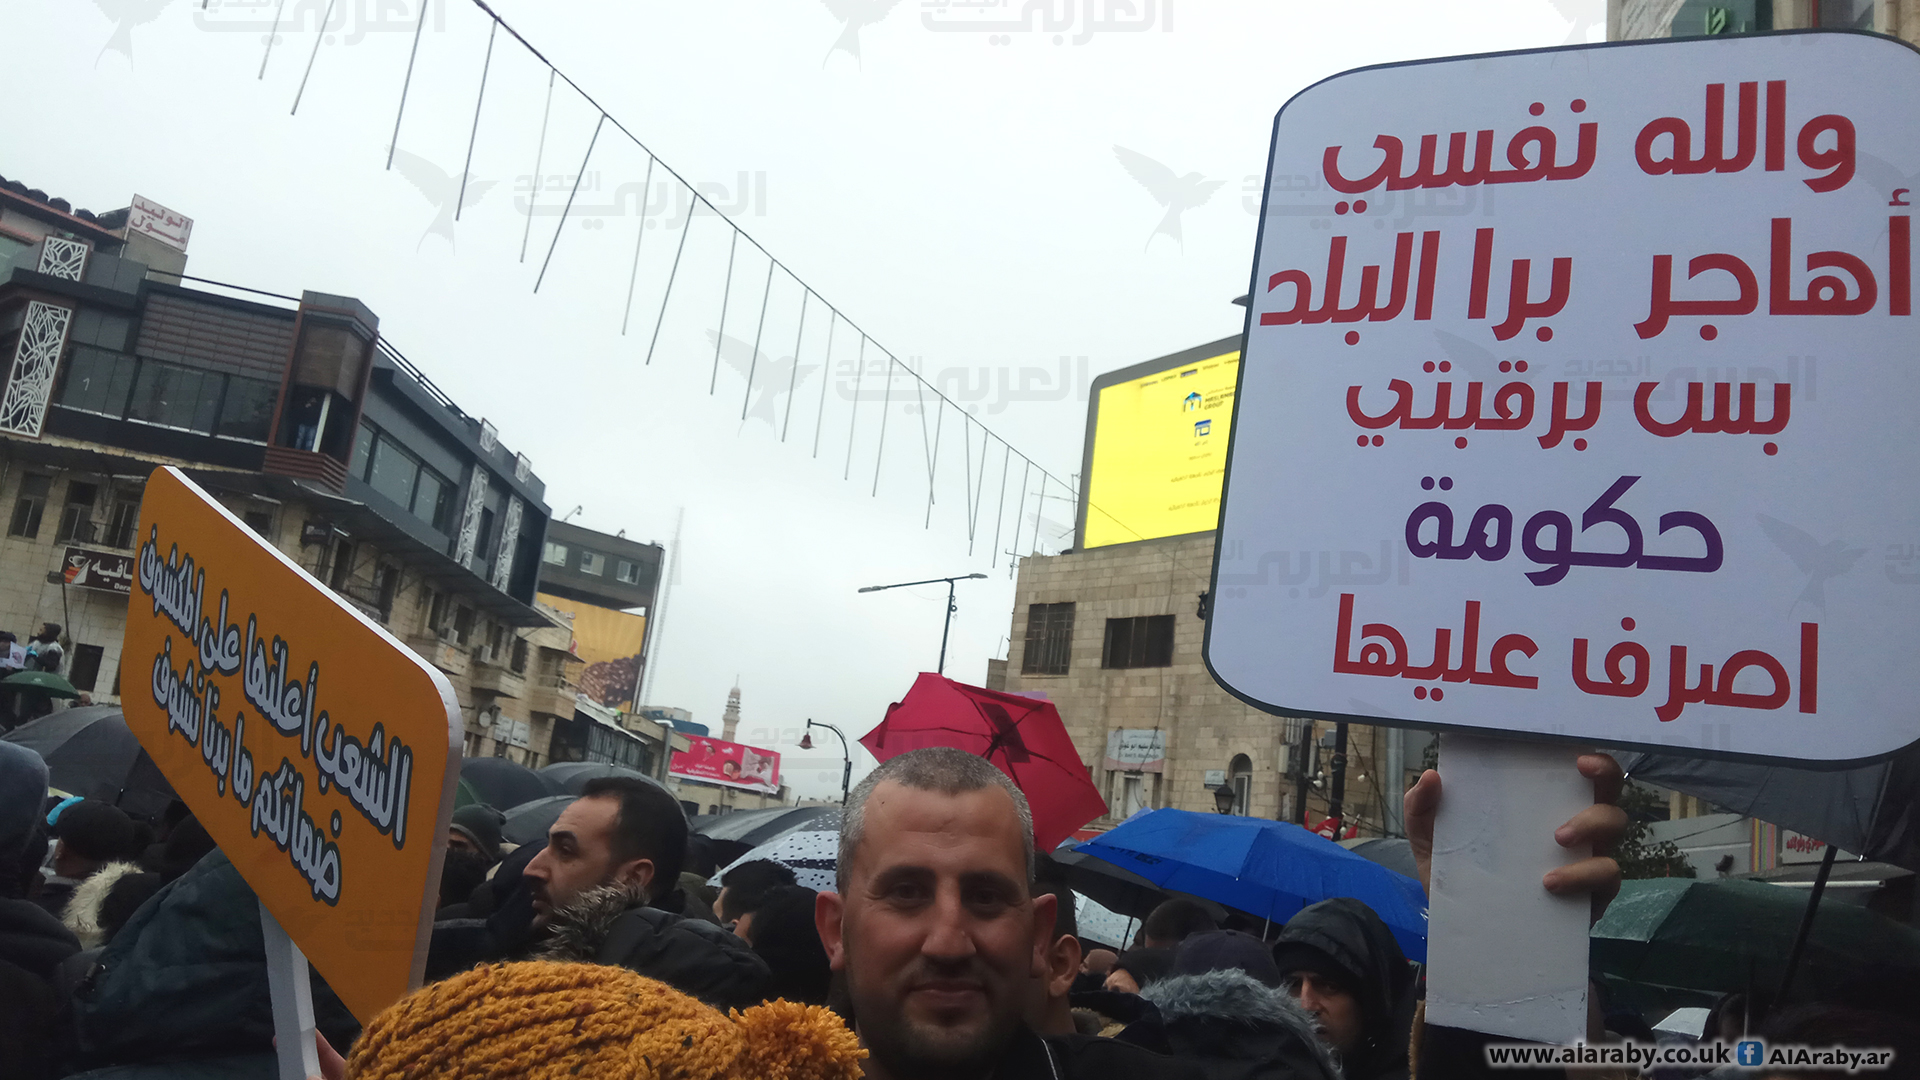 آلاف العمال والموظفين الفلسطينيين يطالبون بإسقاط قانون الضمان